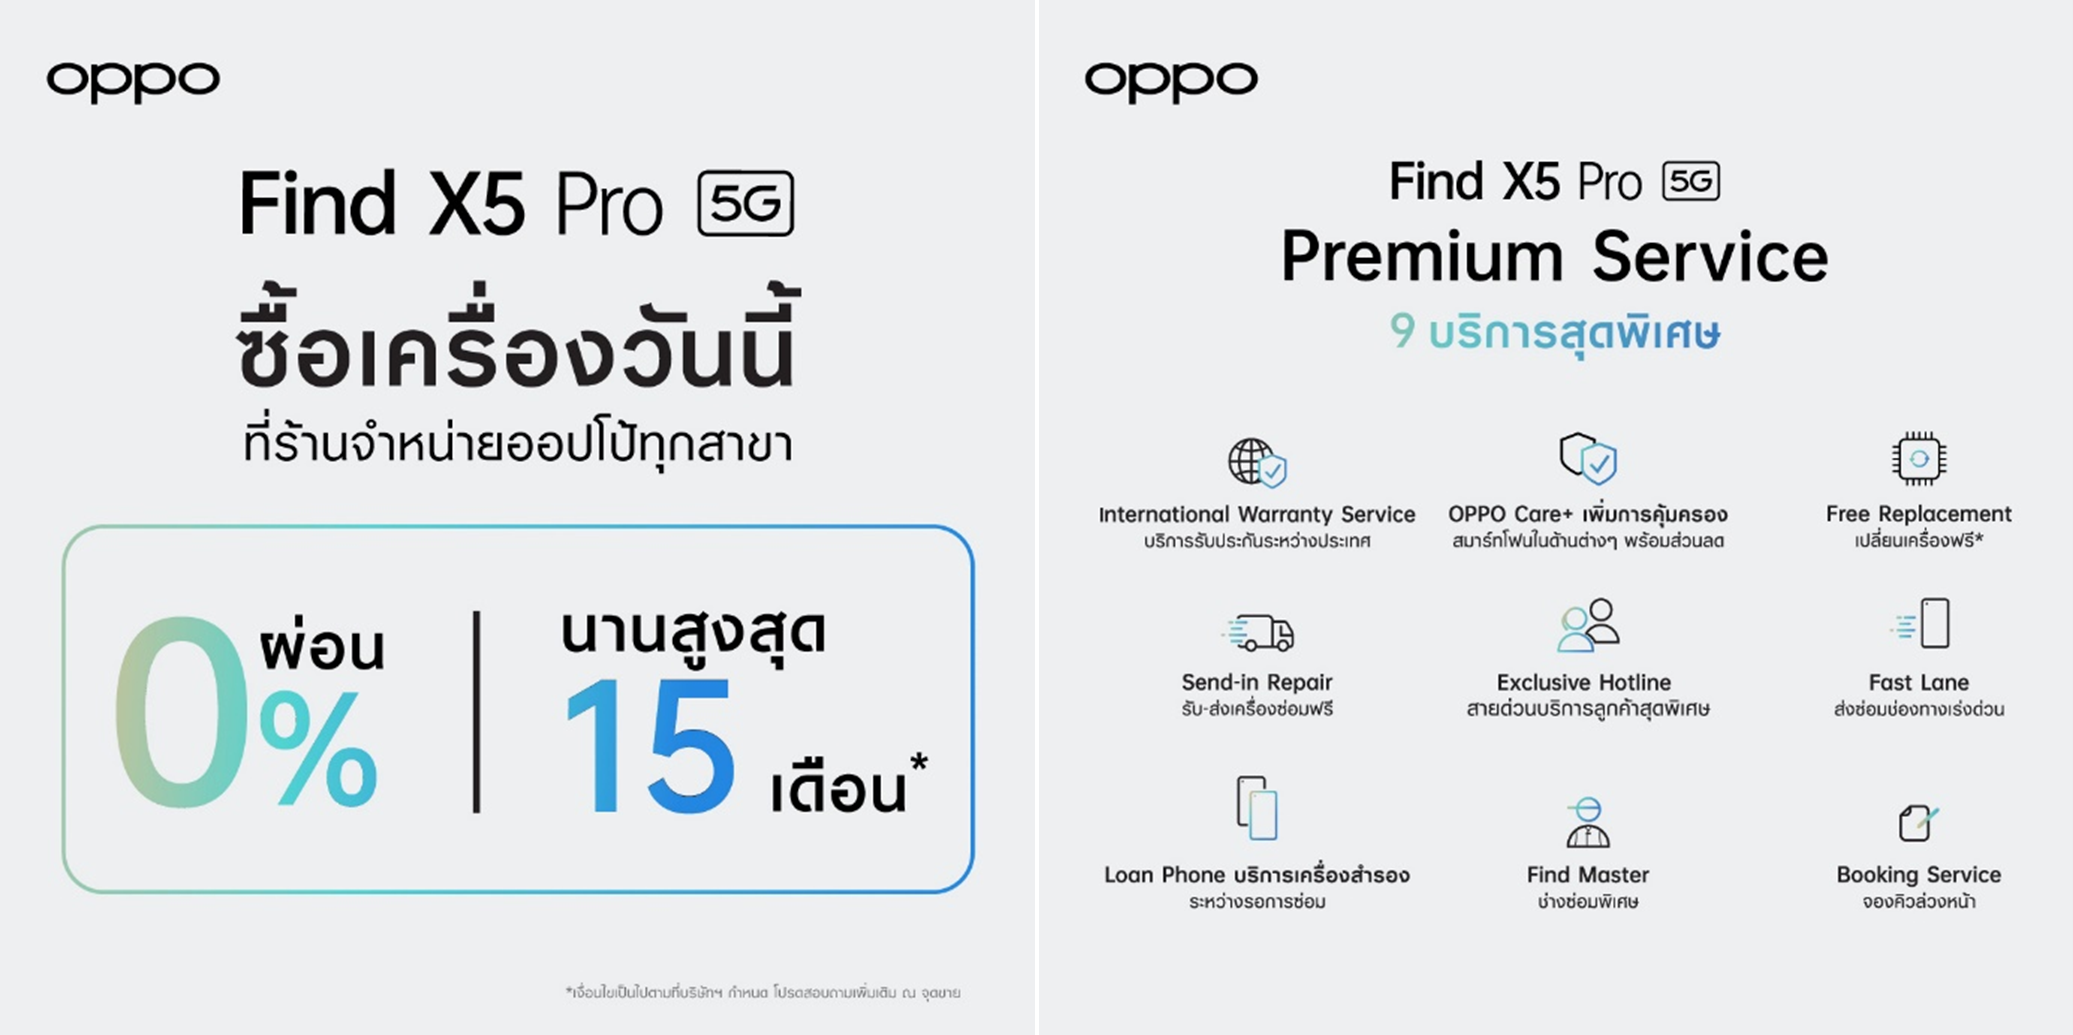 OPPO Find X5 Pro 5G วางจำหน่ายแล้วอย่างเป็นทางการ พร้อมจับมือ AIS, ดีแทค, ทรูมูฟ เอช  มอบส่วนลดสูงสุด 19,000 บาท ถึง 31 พ.ค. นี้!